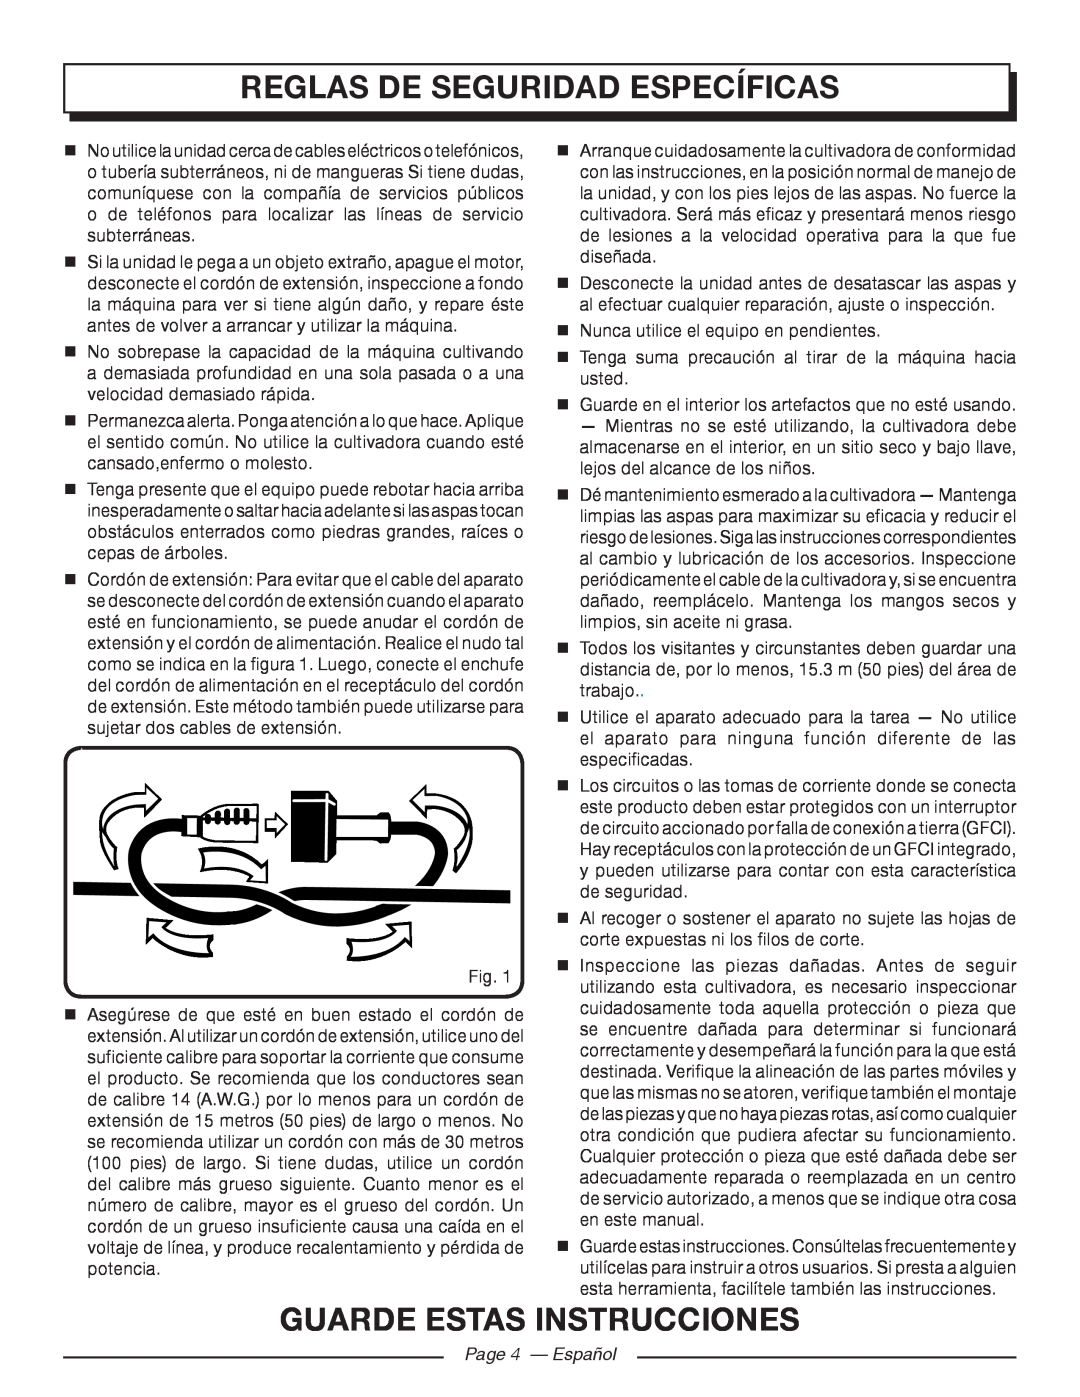 Homelite UT46510 manuel dutilisation reglas de seguridad específicas, guarde estas instrucciones, Page 4 - Español 